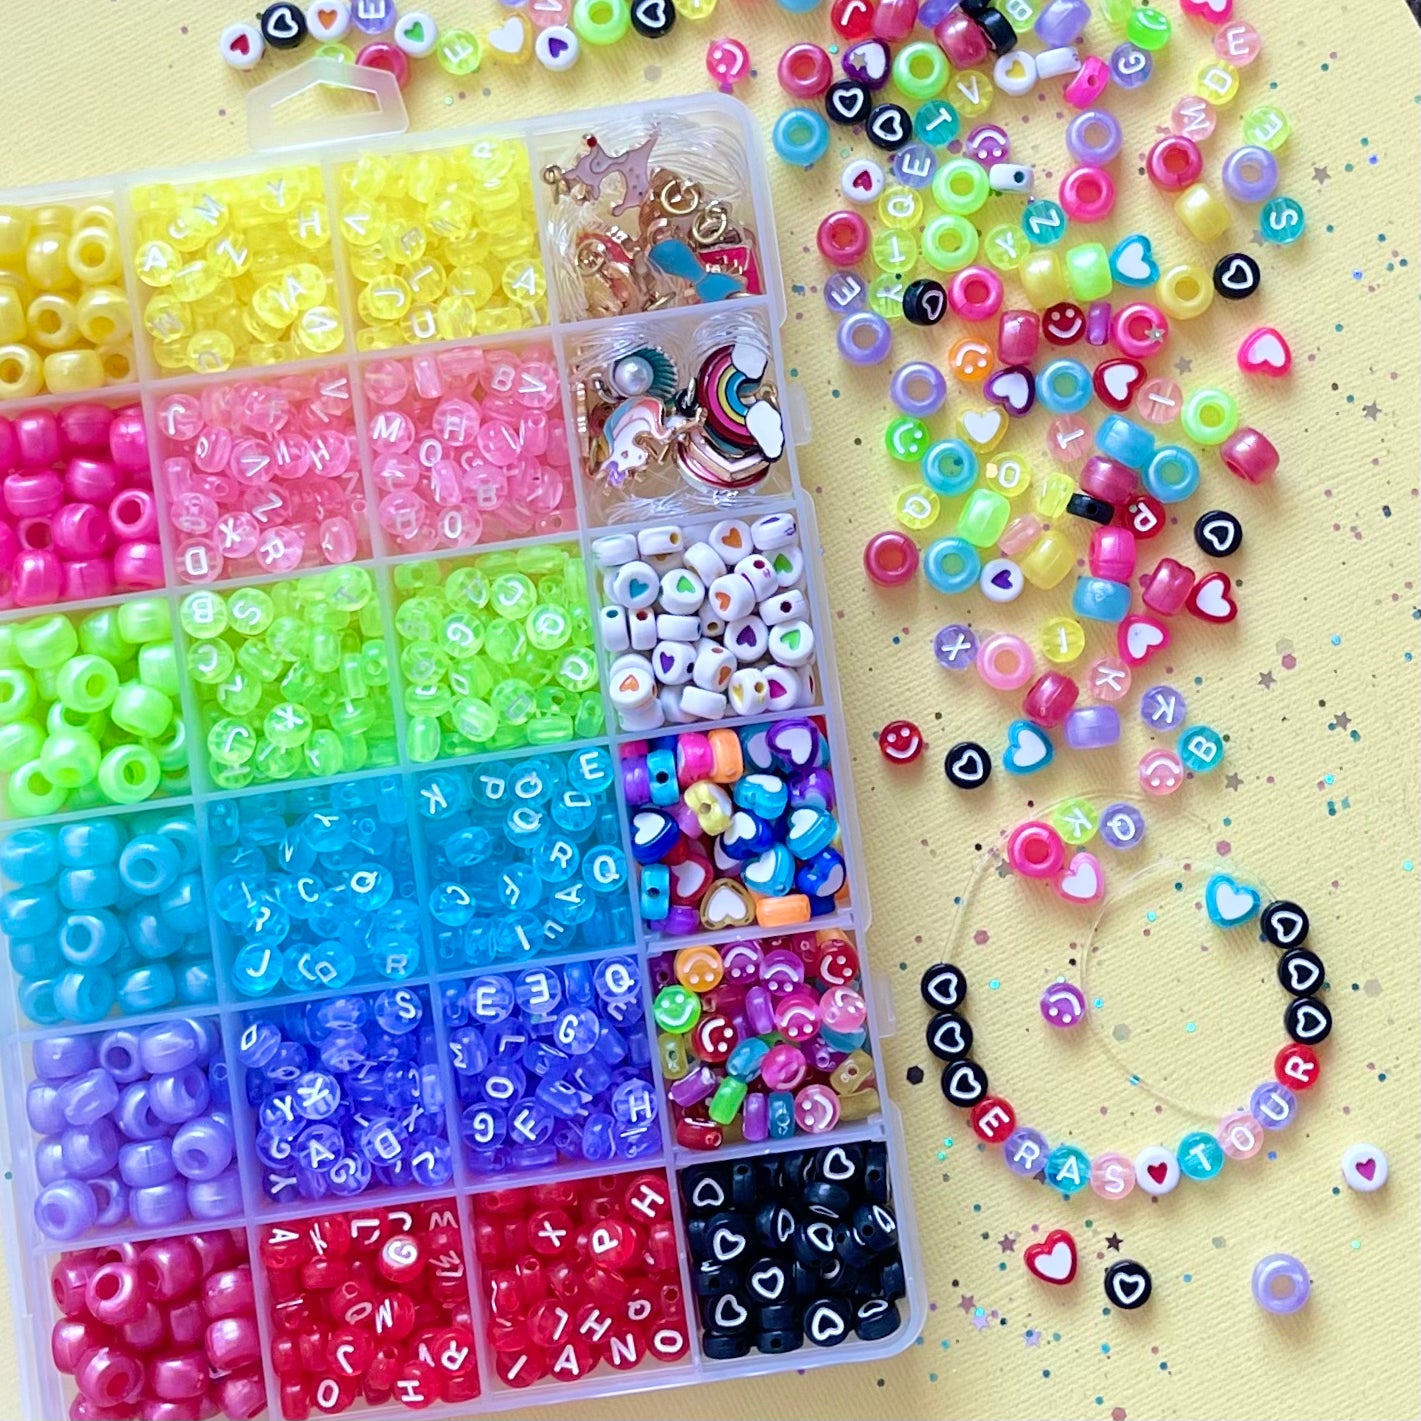 Friendship Bracelet Kits – Sweet As Sugar Jewellery